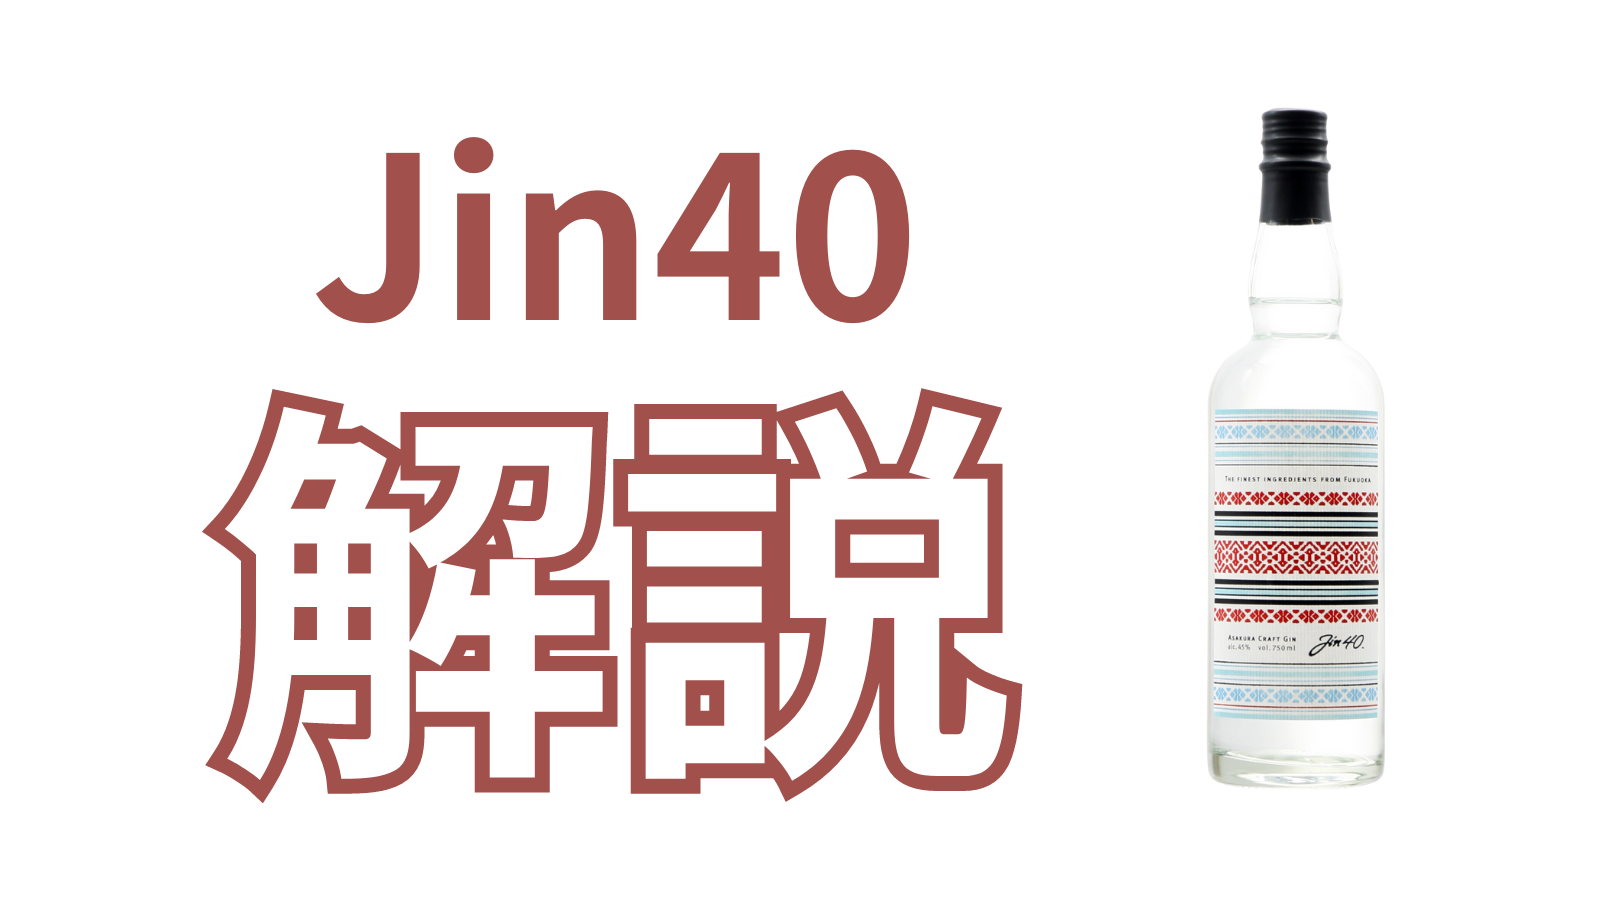 解説】クラフトジン「Jin40 – ASAKURA CRAFT GIN」って何？株式会社 